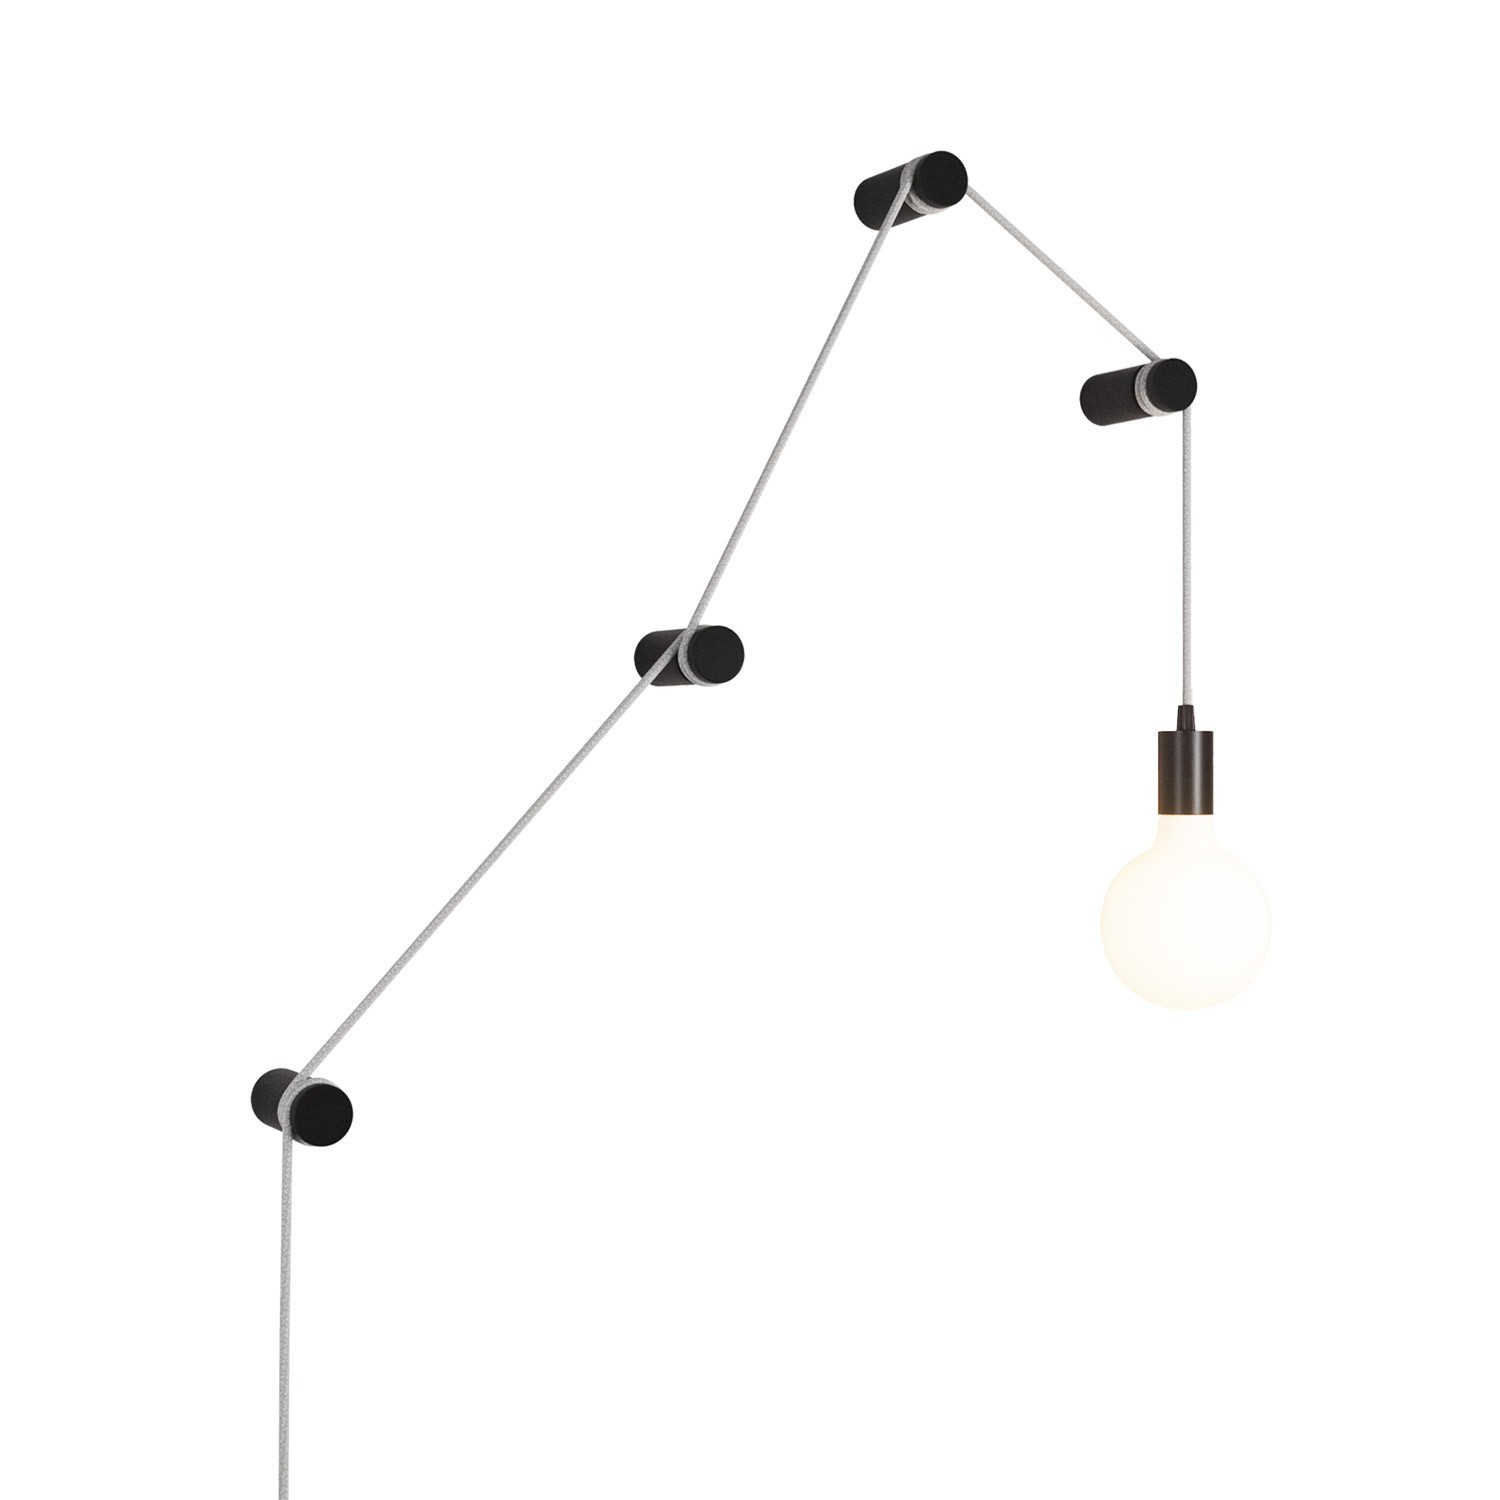 Bærbar slangelampe med metalholder og stik, komplet med 4 Rolé-kabelkroge